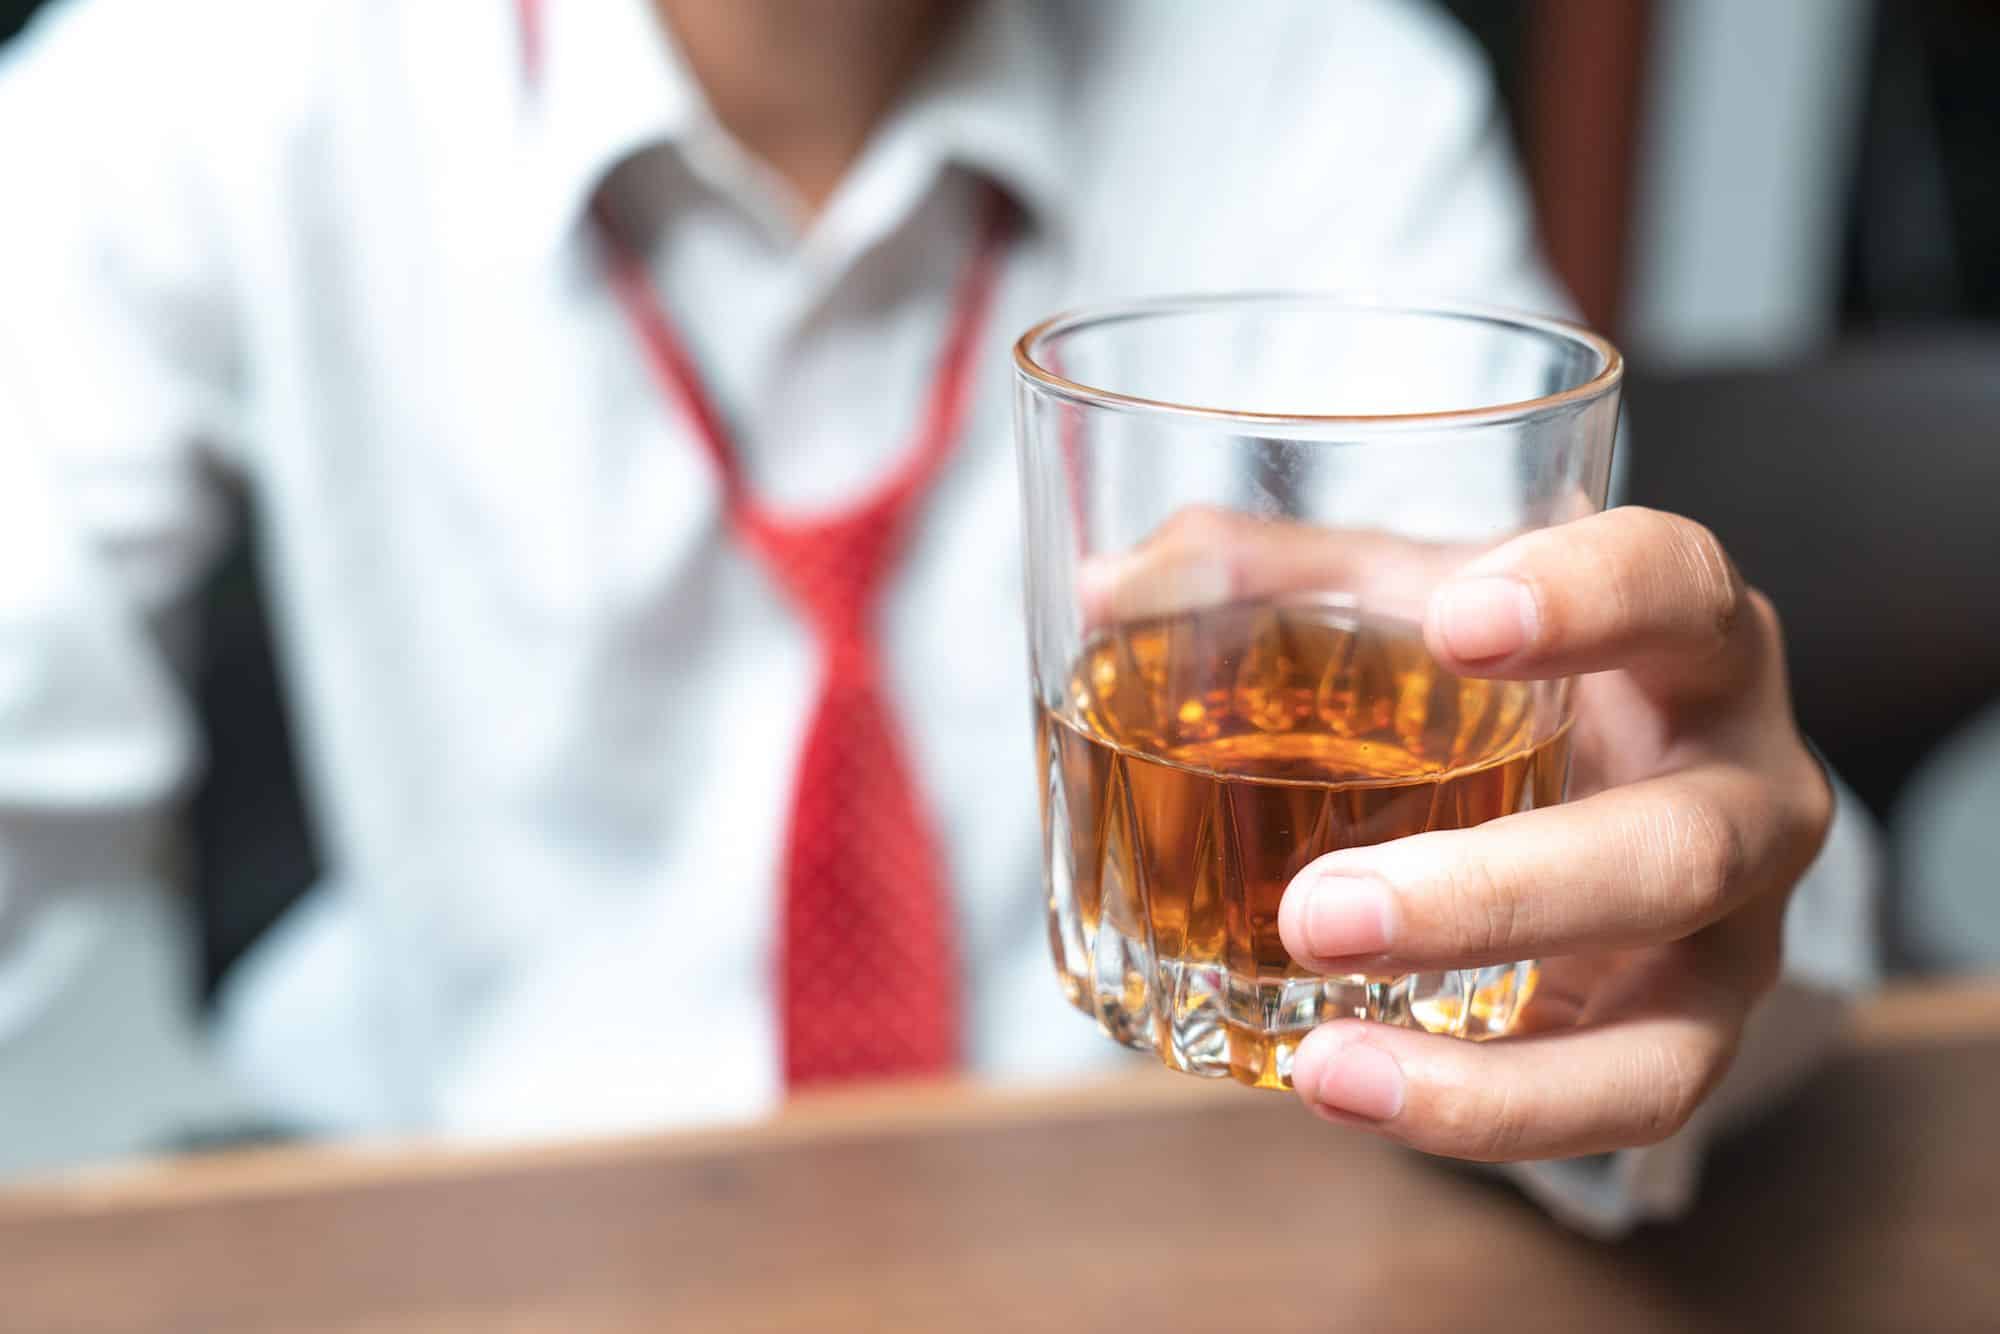 المشروبات الكحولية تزيد من مخاطر السكتة الدماغية